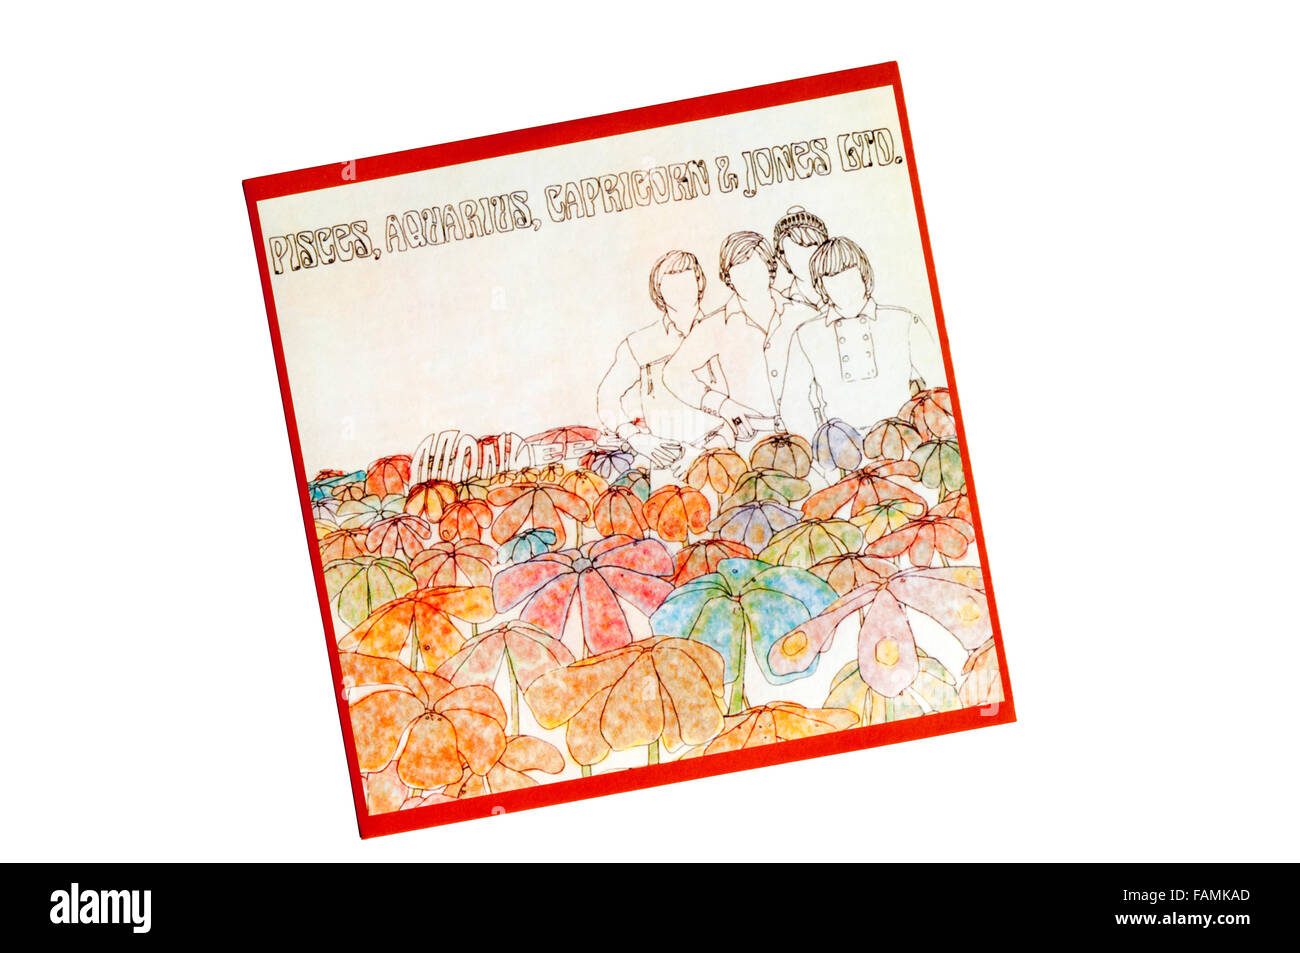 Fische, Wassermann, Steinbock & Jones Ltd wurde das vierte Album von The Monkees.  Im Jahre 1967 veröffentlicht. Stockfoto